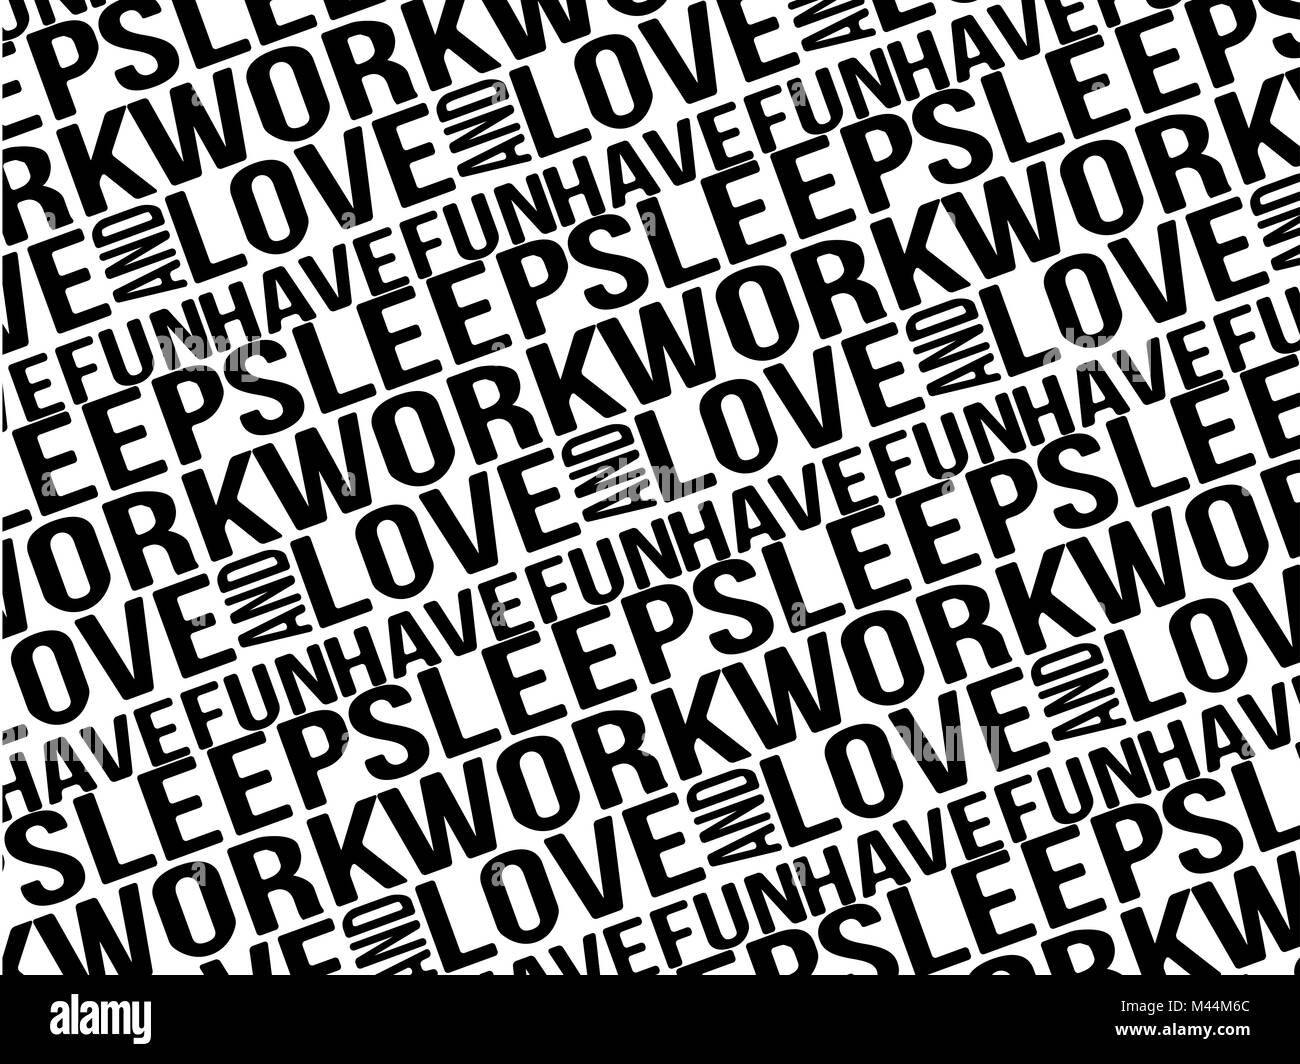 El trabajo del sueño de amor y divertirse patrón tipográfico Foto de stock